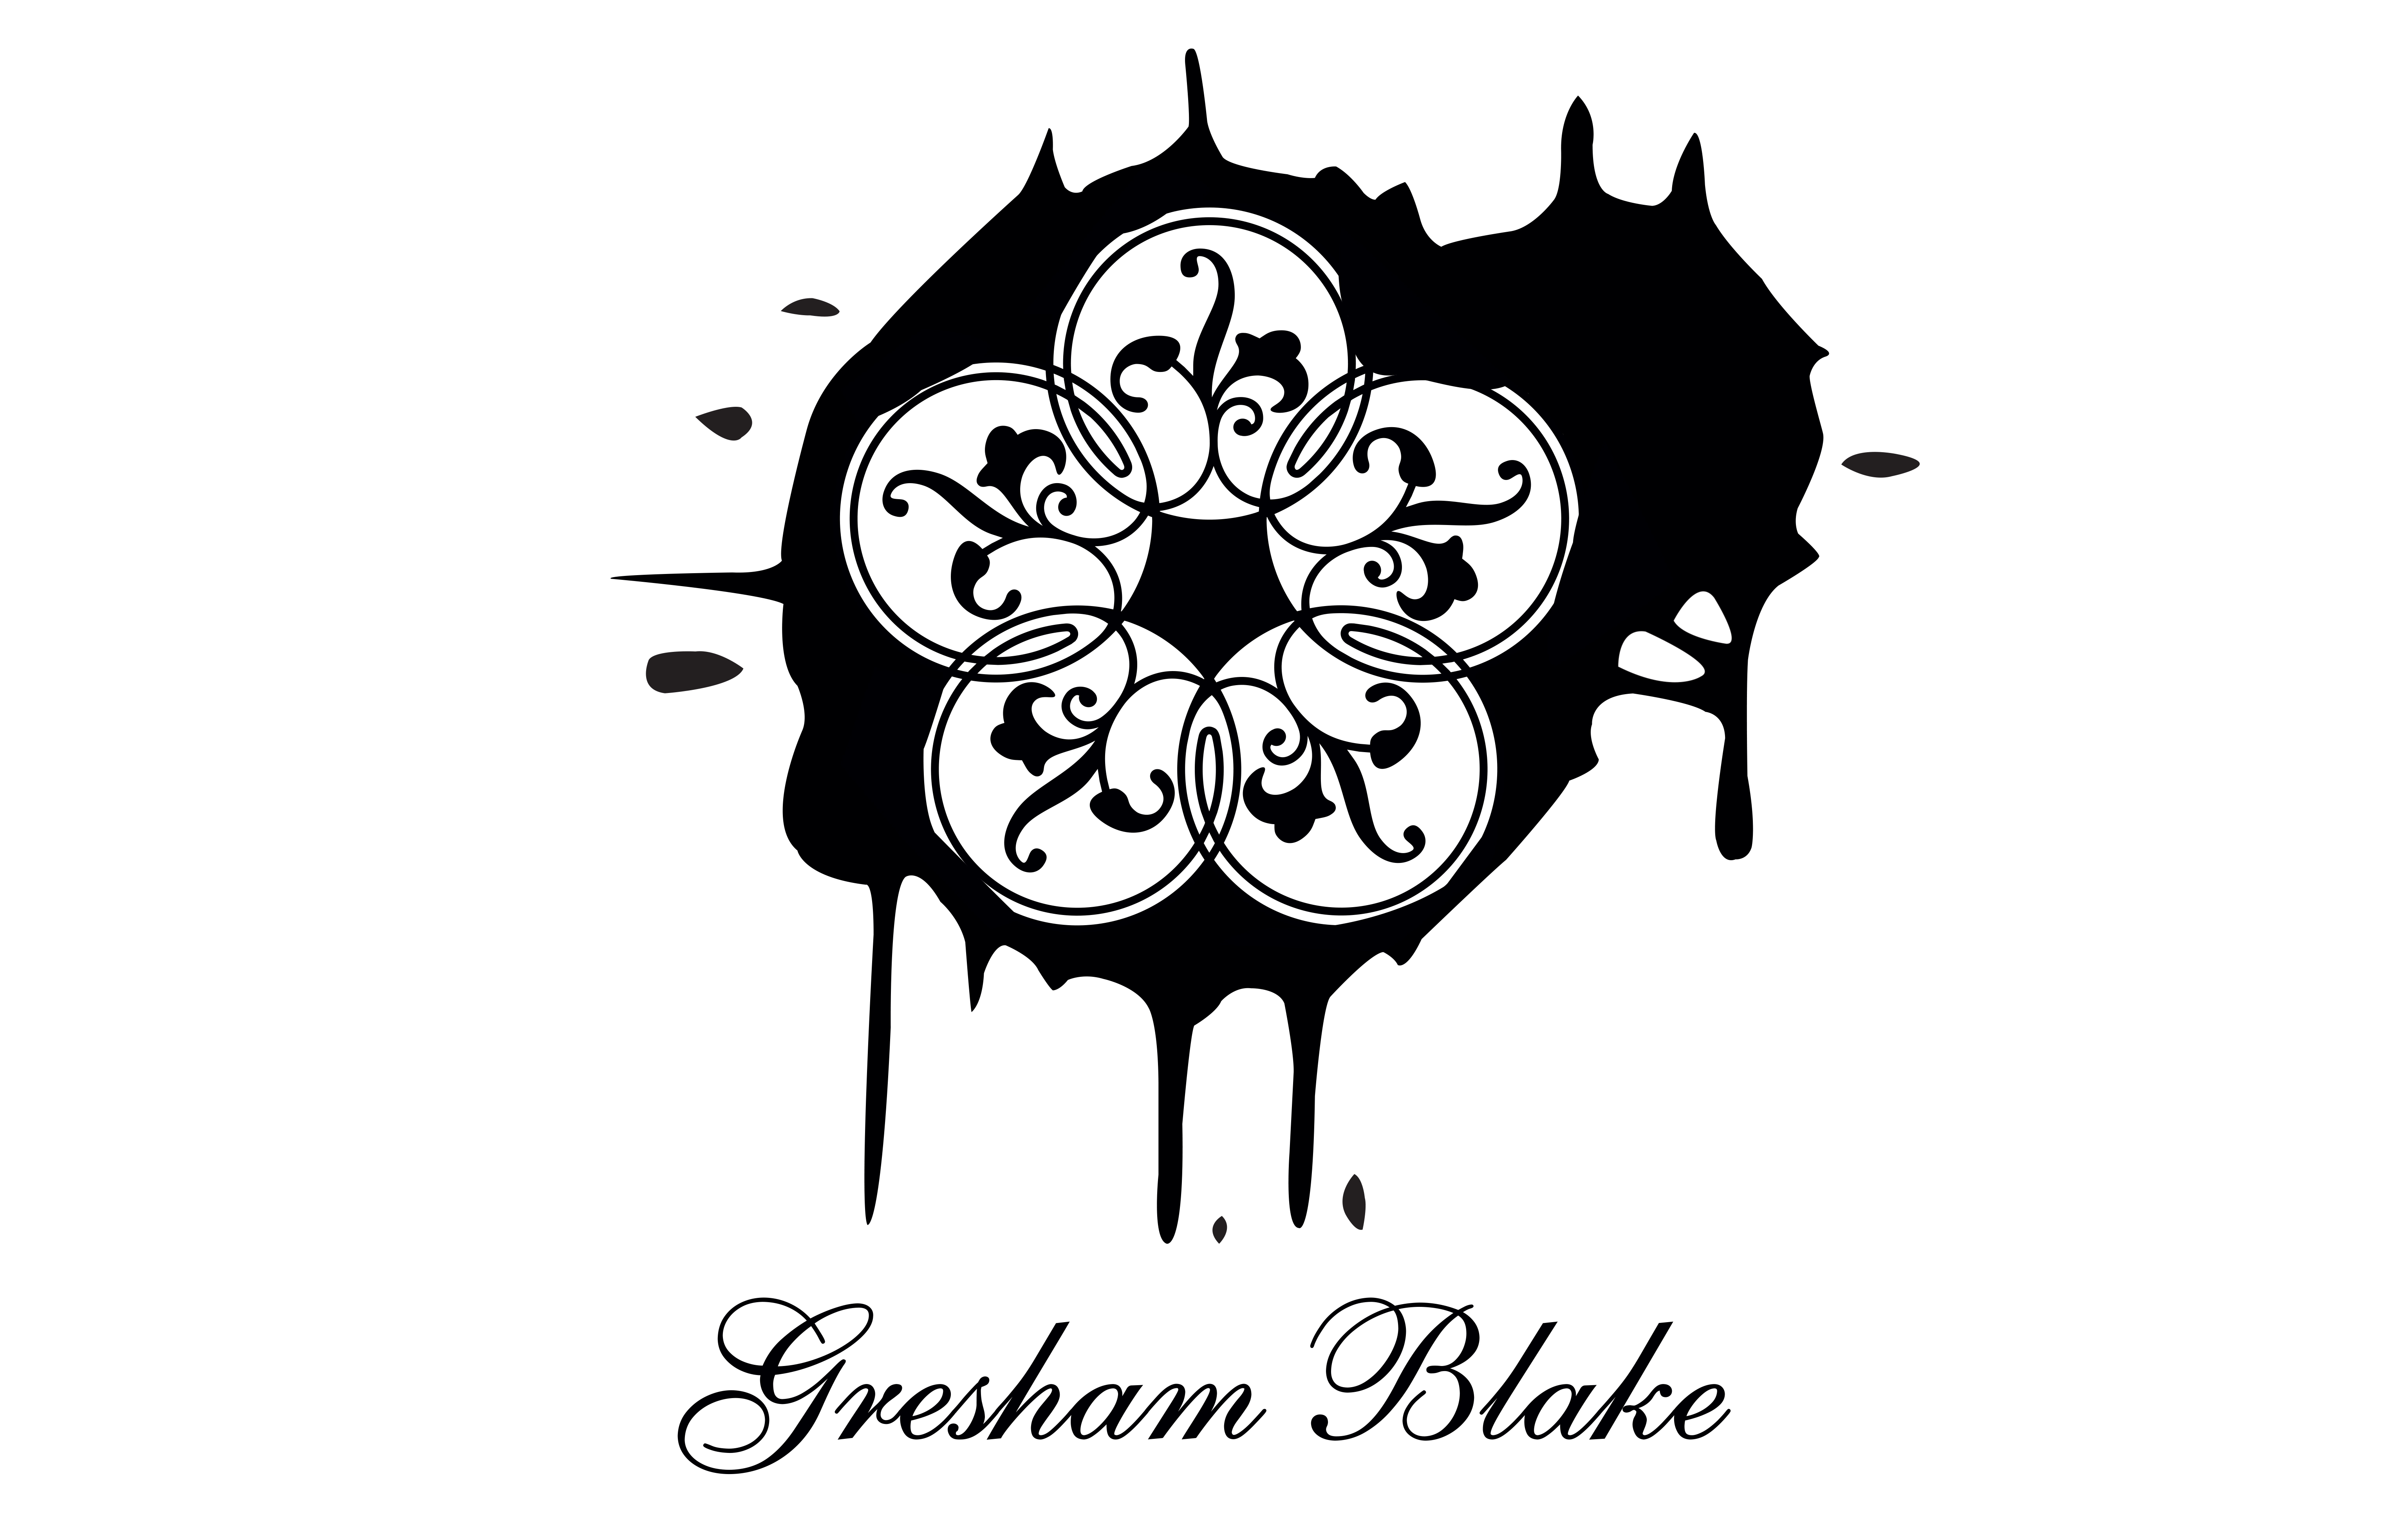 Gresham Blake